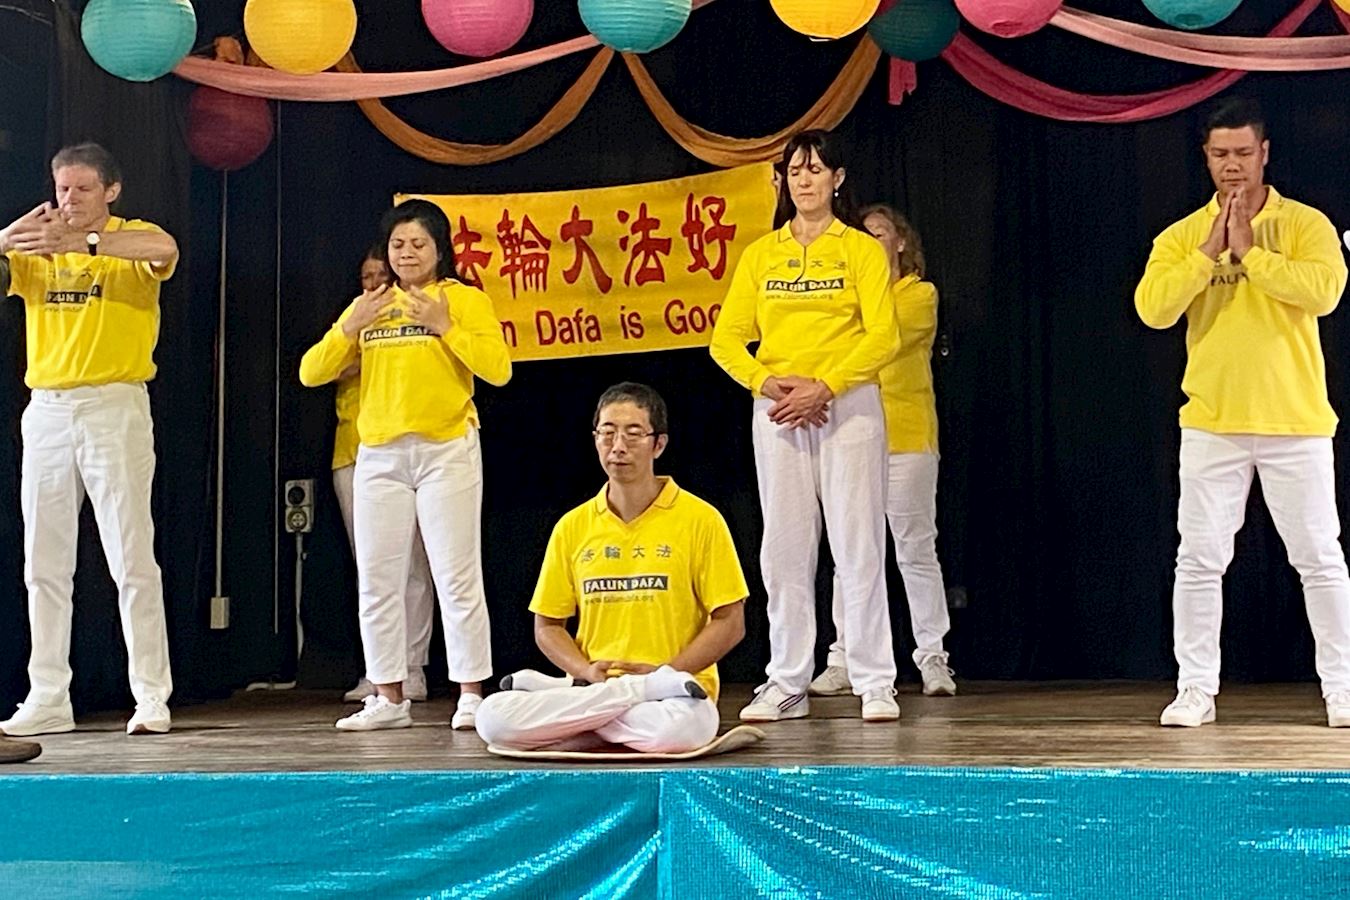 Image for article ​Австралія. Жителі штату Квінсленд дякують практикувальникам Дафа за знайомство з традиційною культурою Китаю